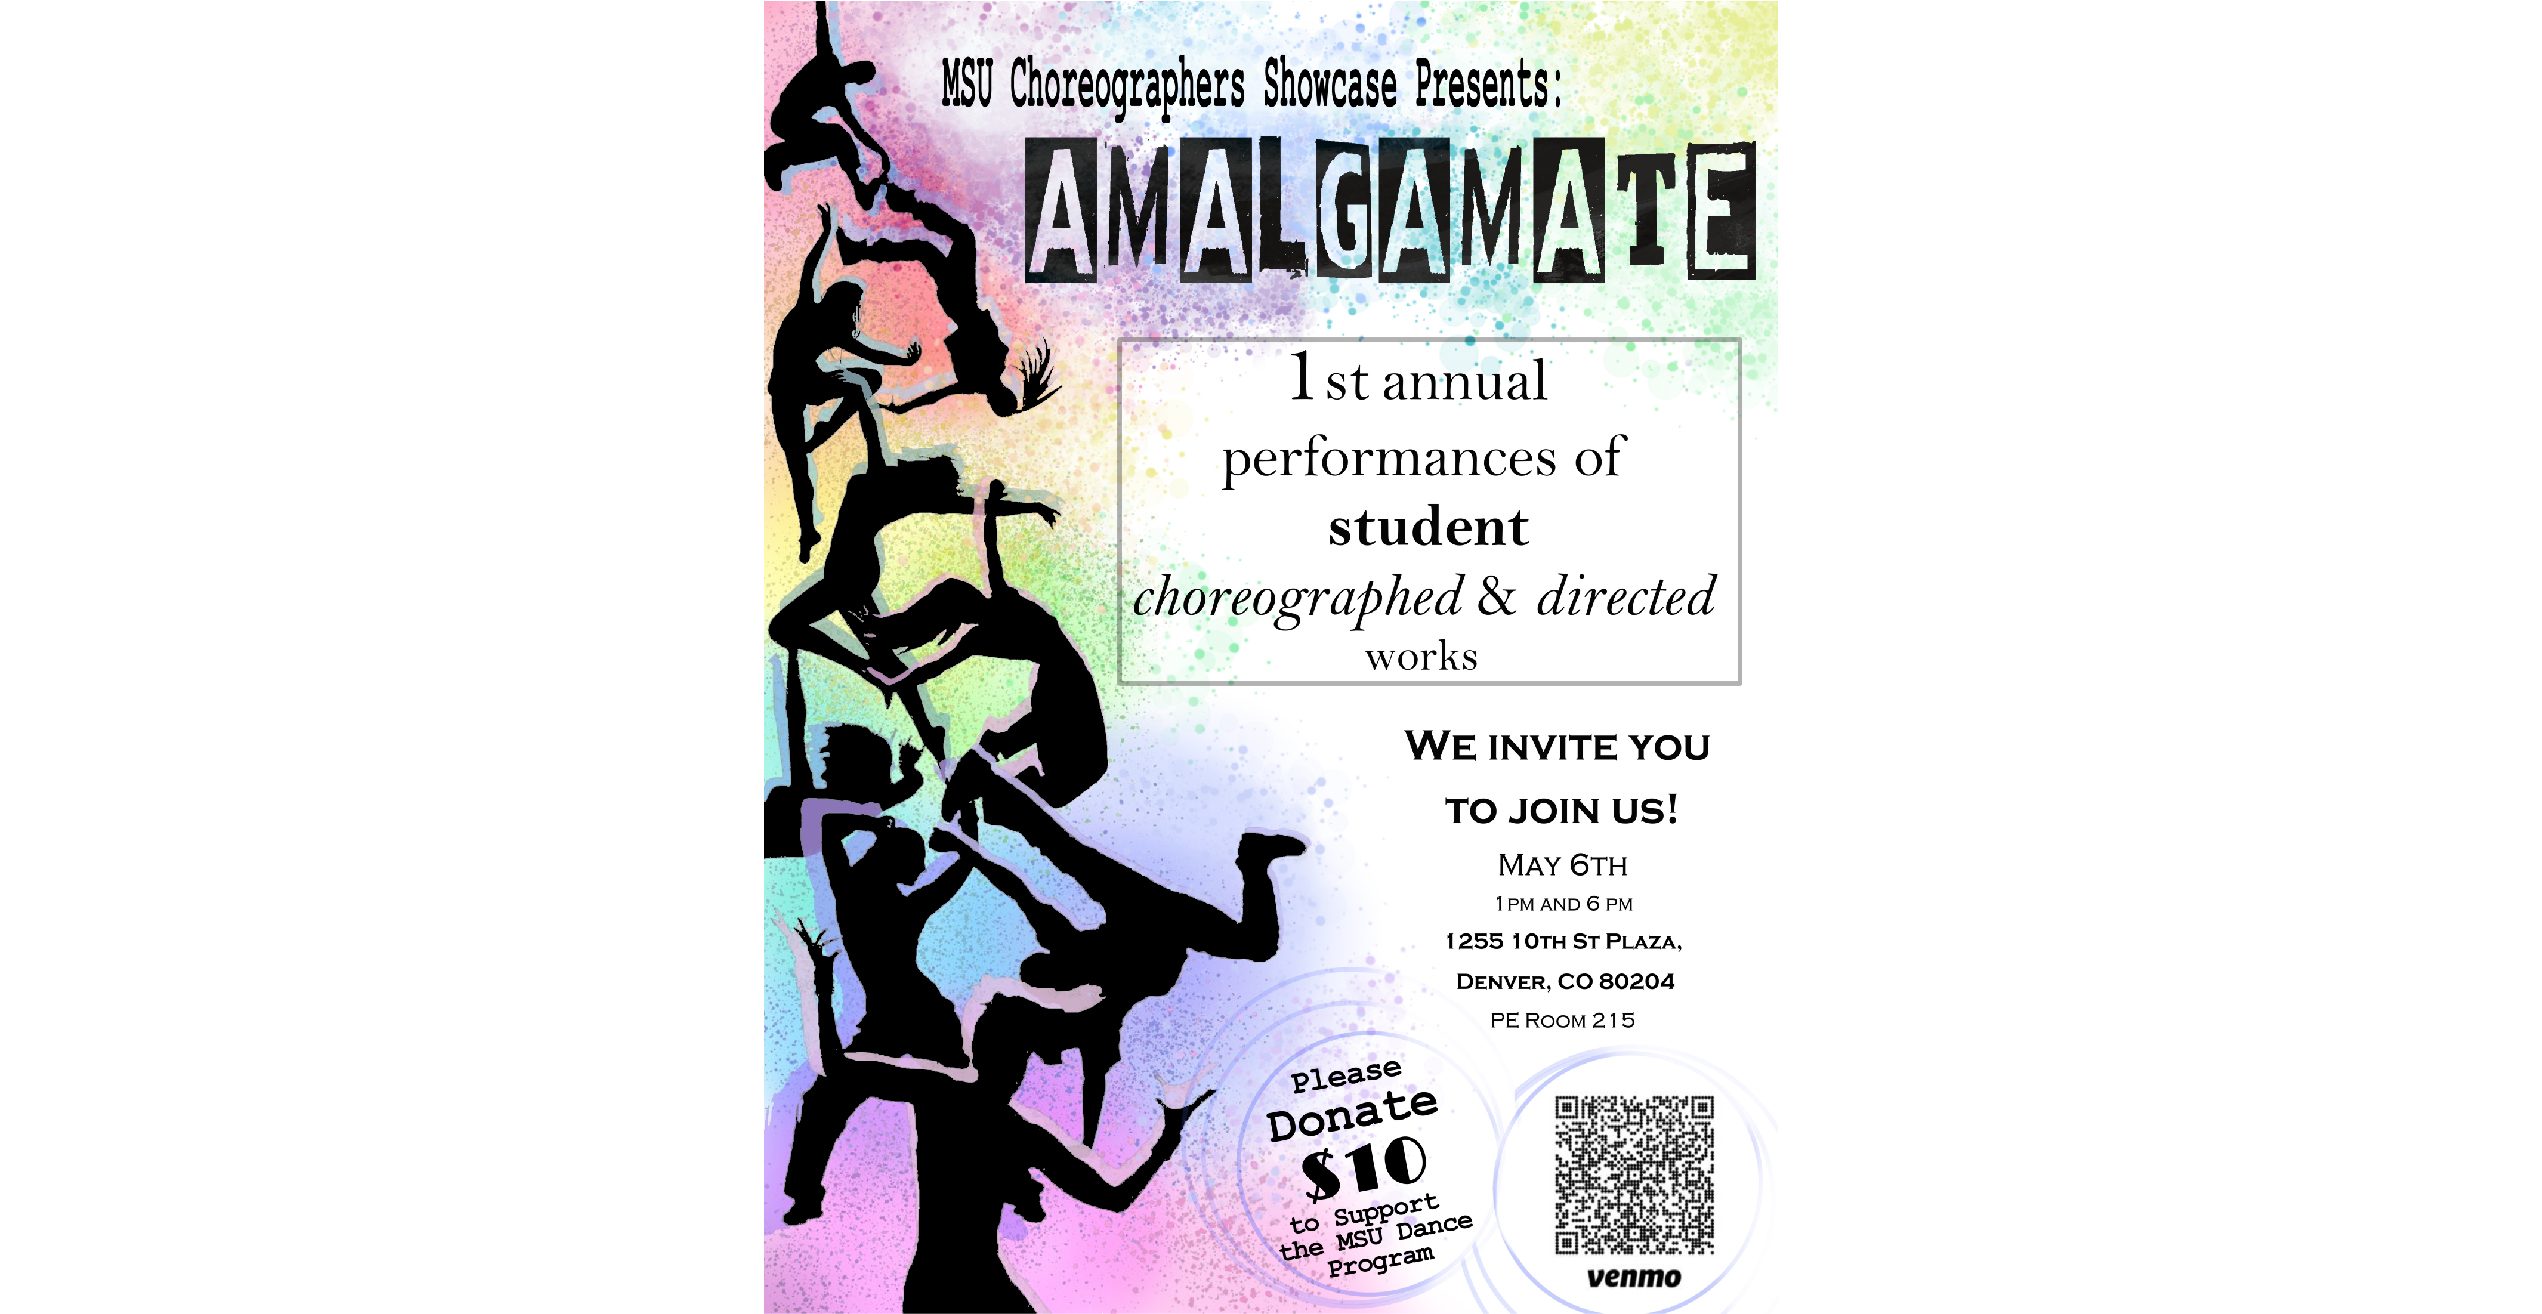 Amalgamate_Website_Image